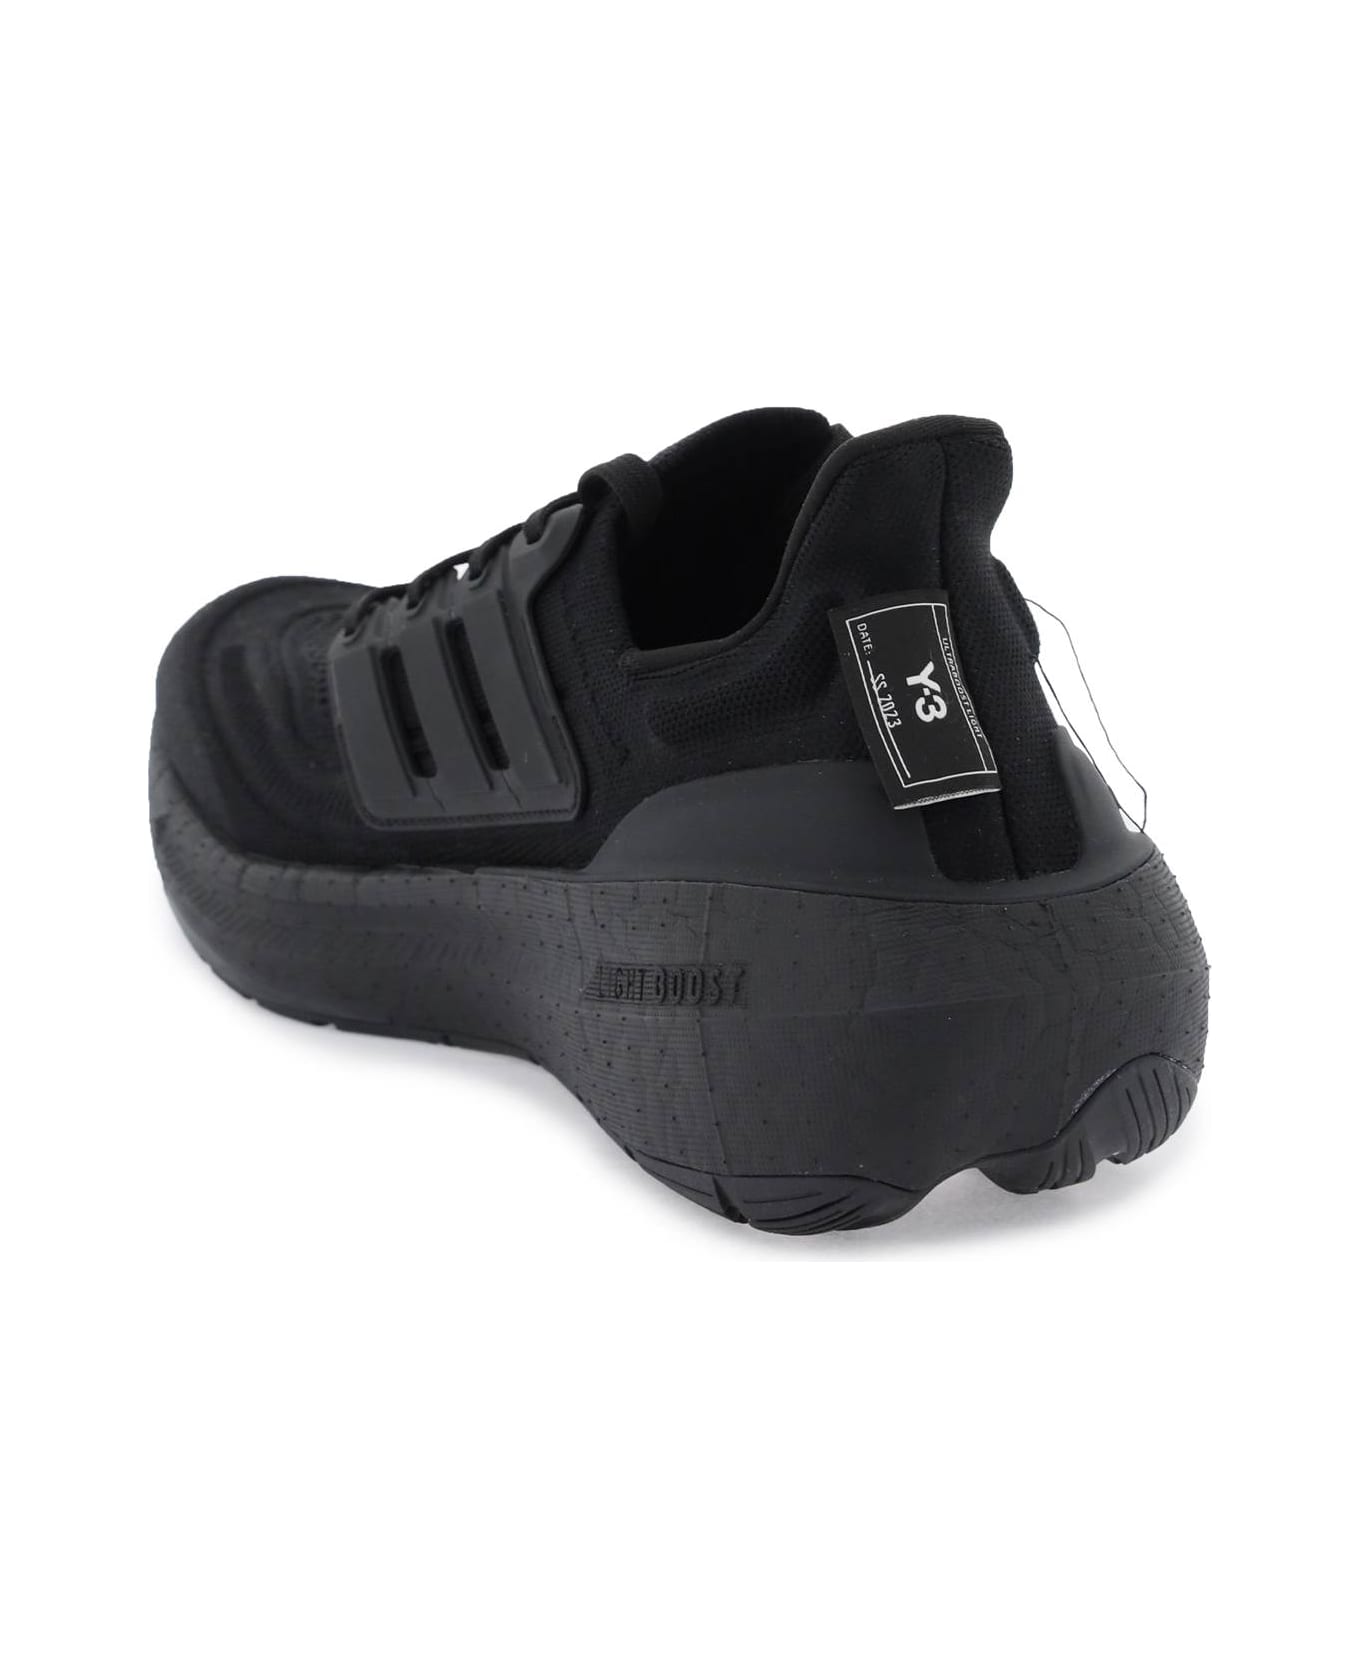 Y-3 Ultraboost Light Sneakers - BLACK WHITE BLACK WHITE OFF WHITE (Black)